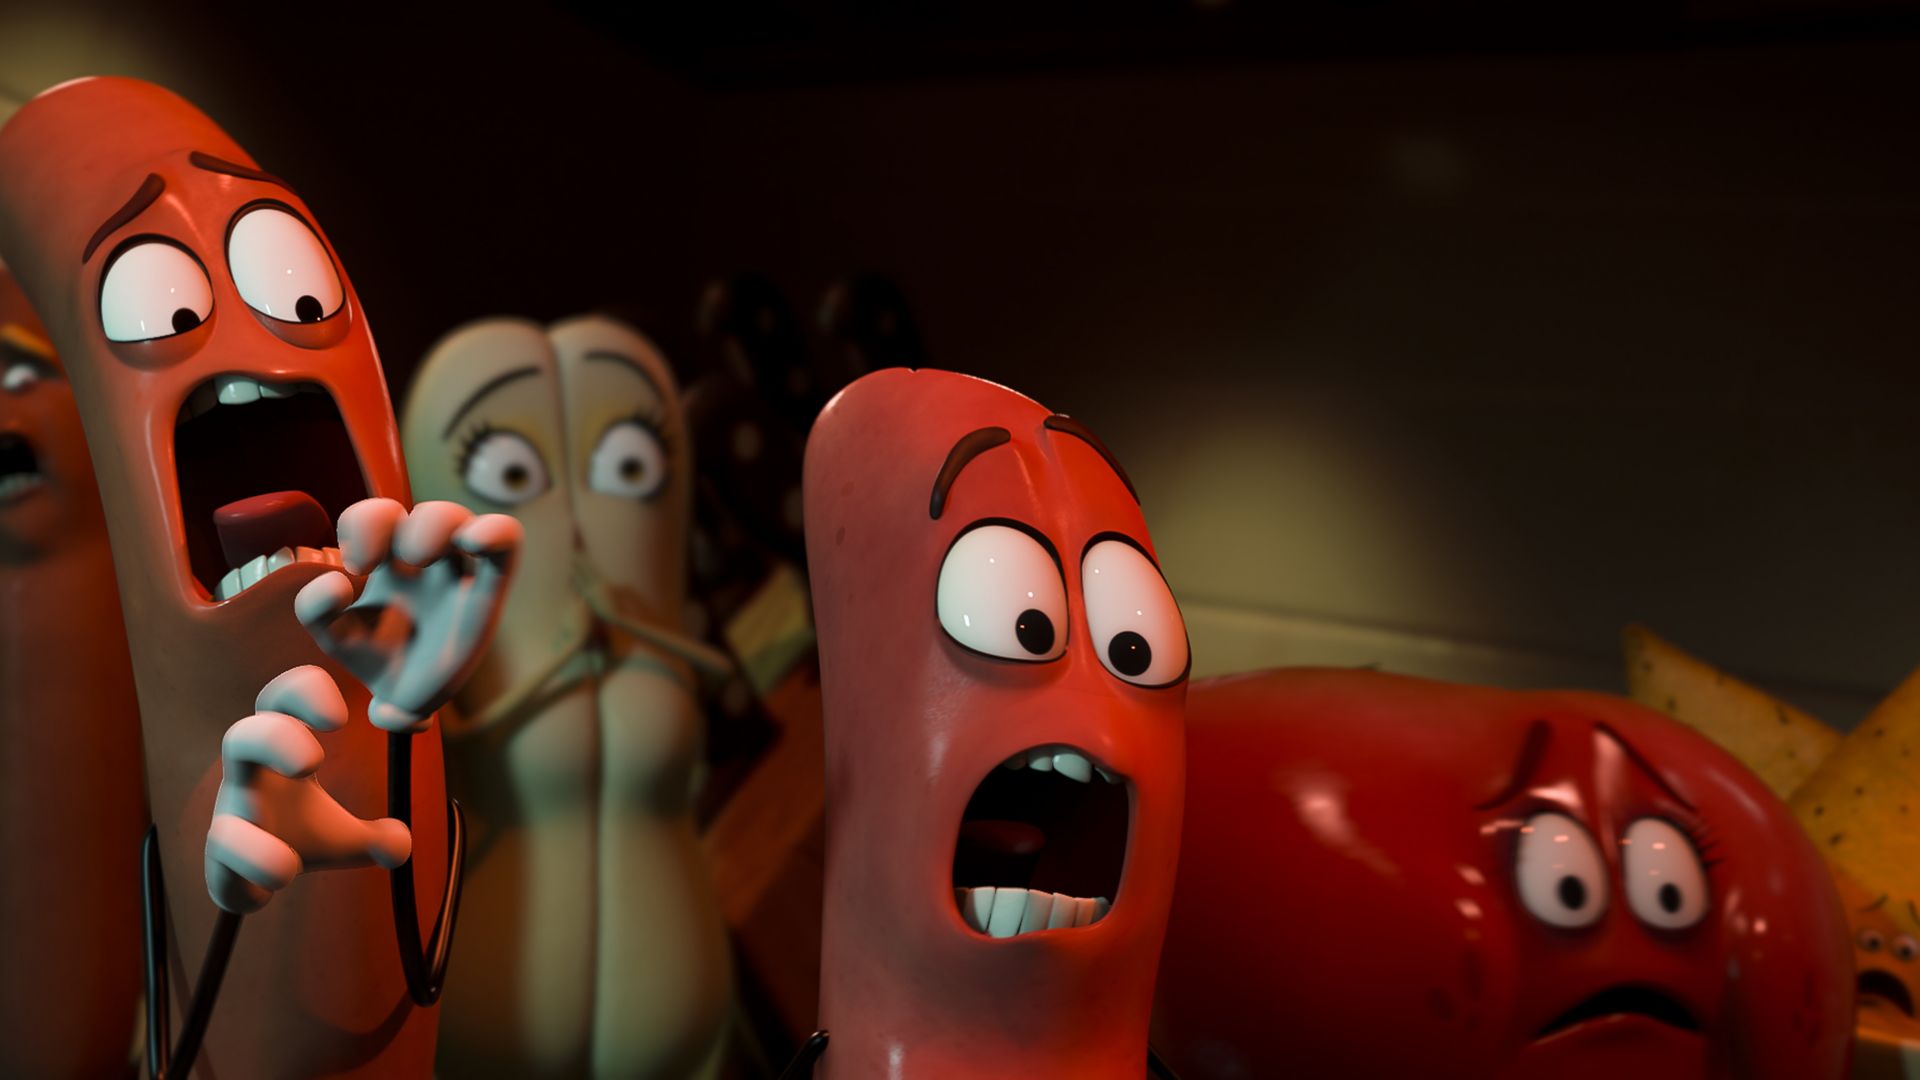 Сосисочная вечеринка, лучшие мультфильмы 2016, Sausage Party, best animation movies of 2016 (horizontal)